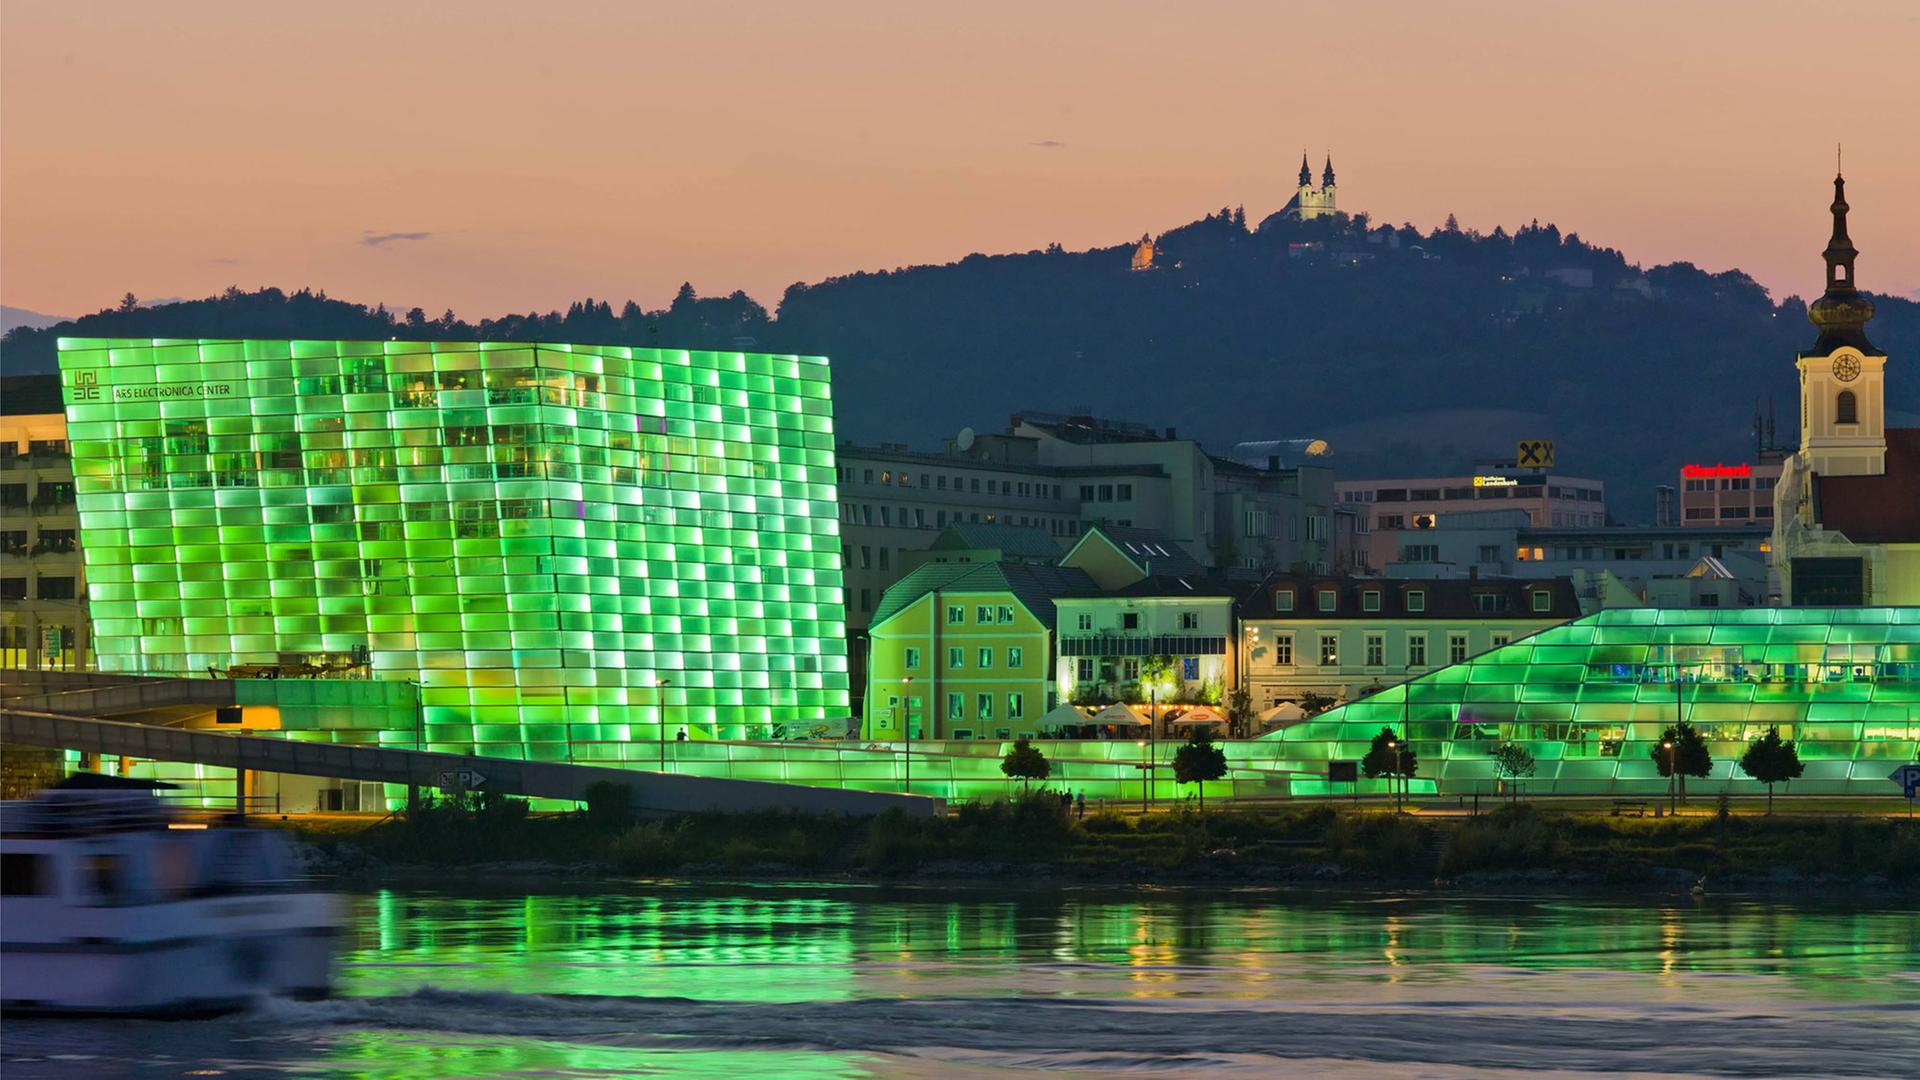 Blick auf das Ars Electronica Center in Linz mit seiner in grünes Licht getauchten Fassade. Das Gebäude spiegelt sich im Wasser, im Hintergrund ist ein Berg zu sehen.